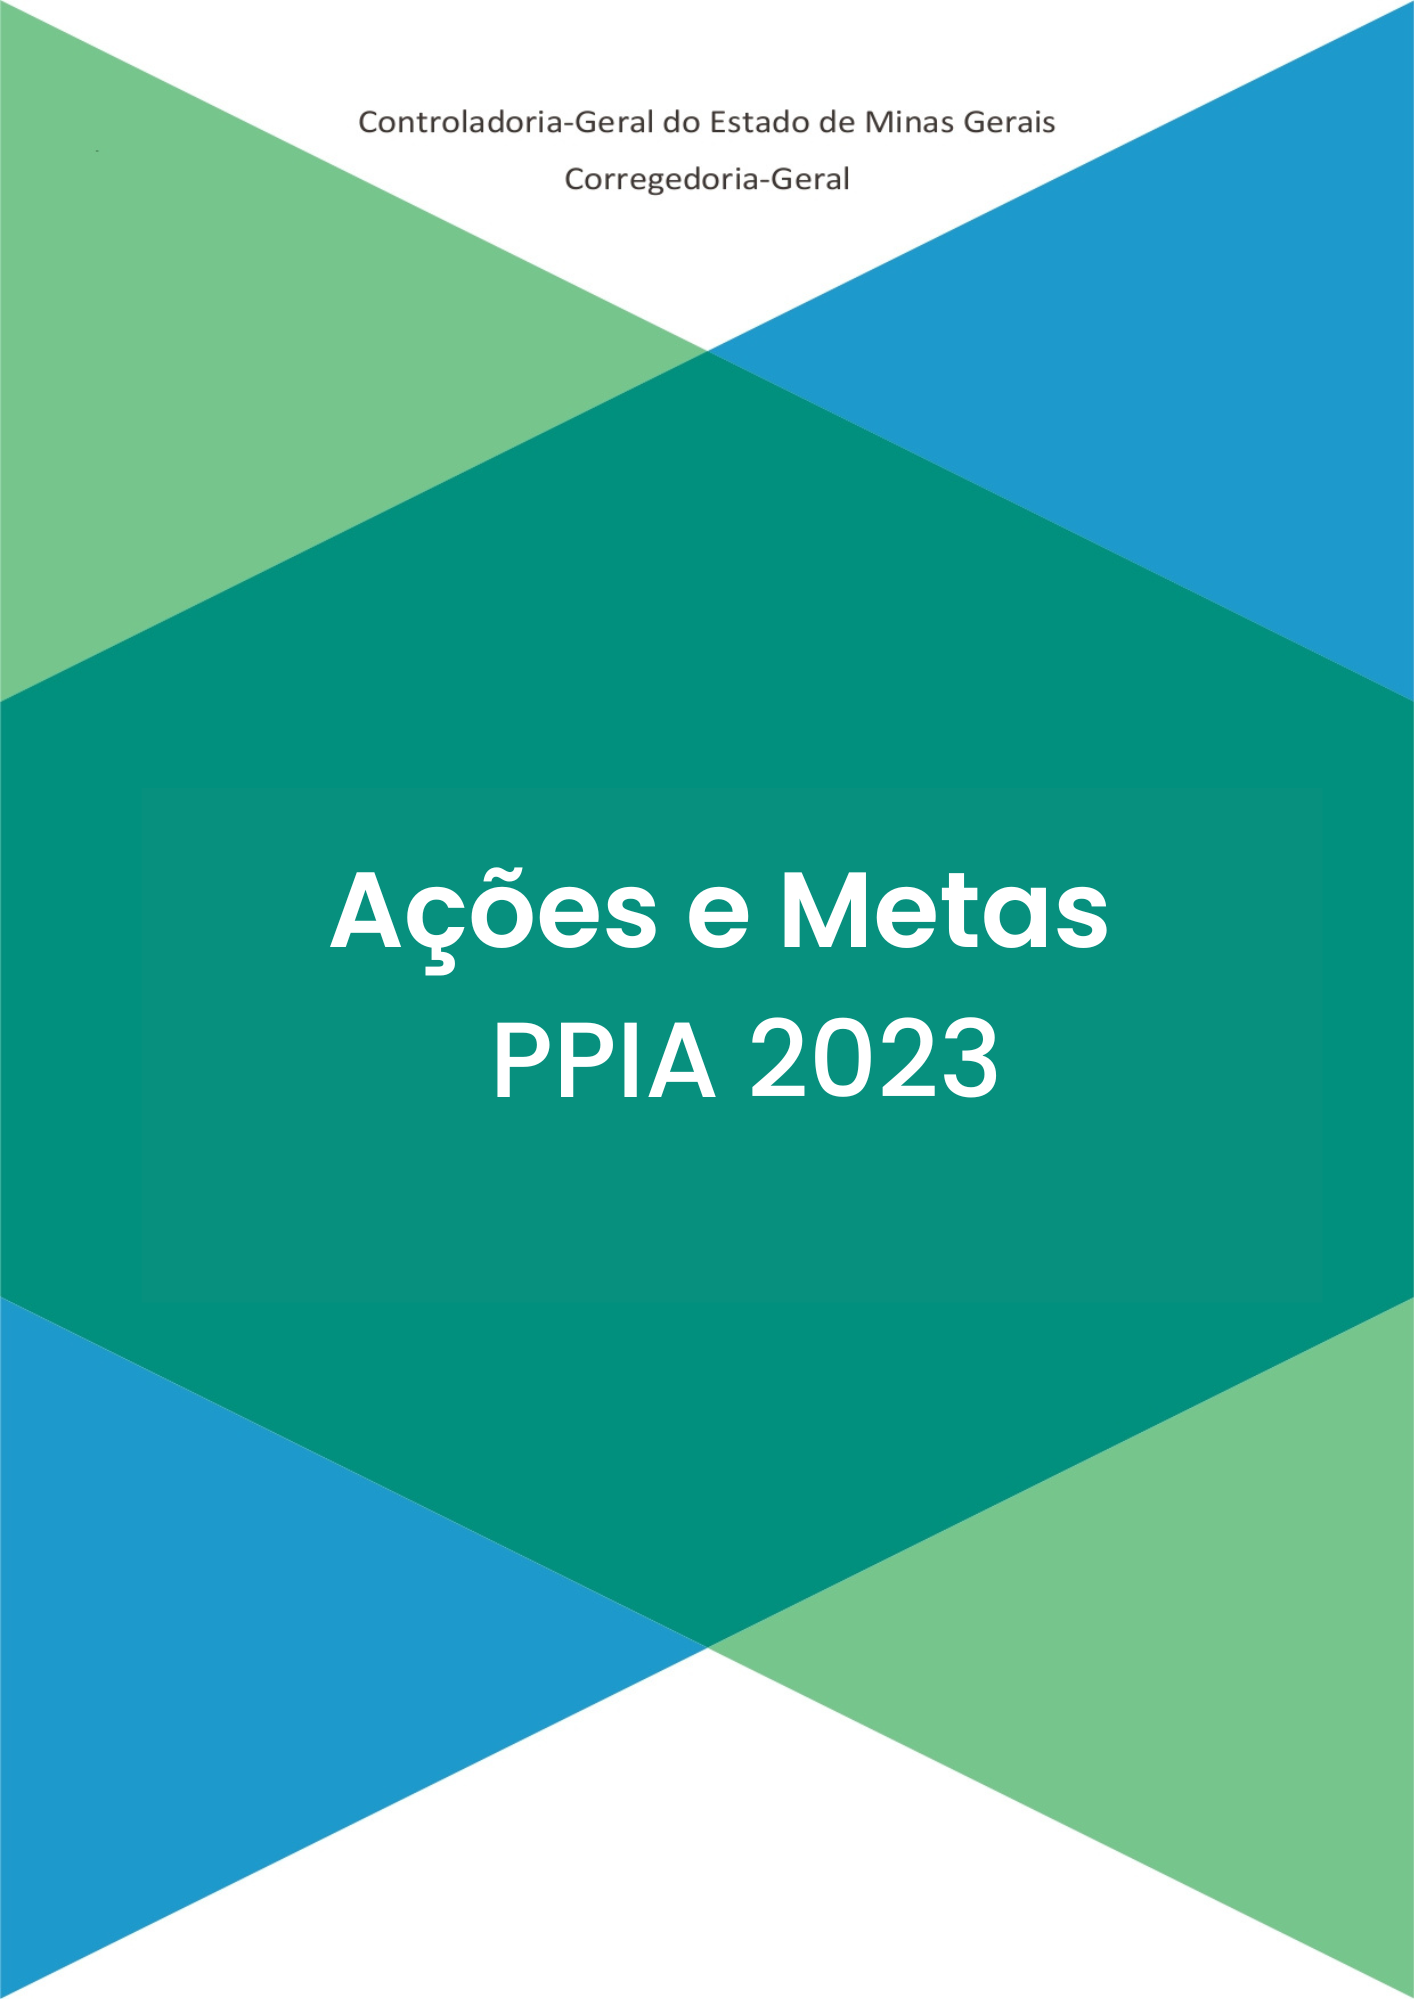 Acoes e metas PPIA 2023